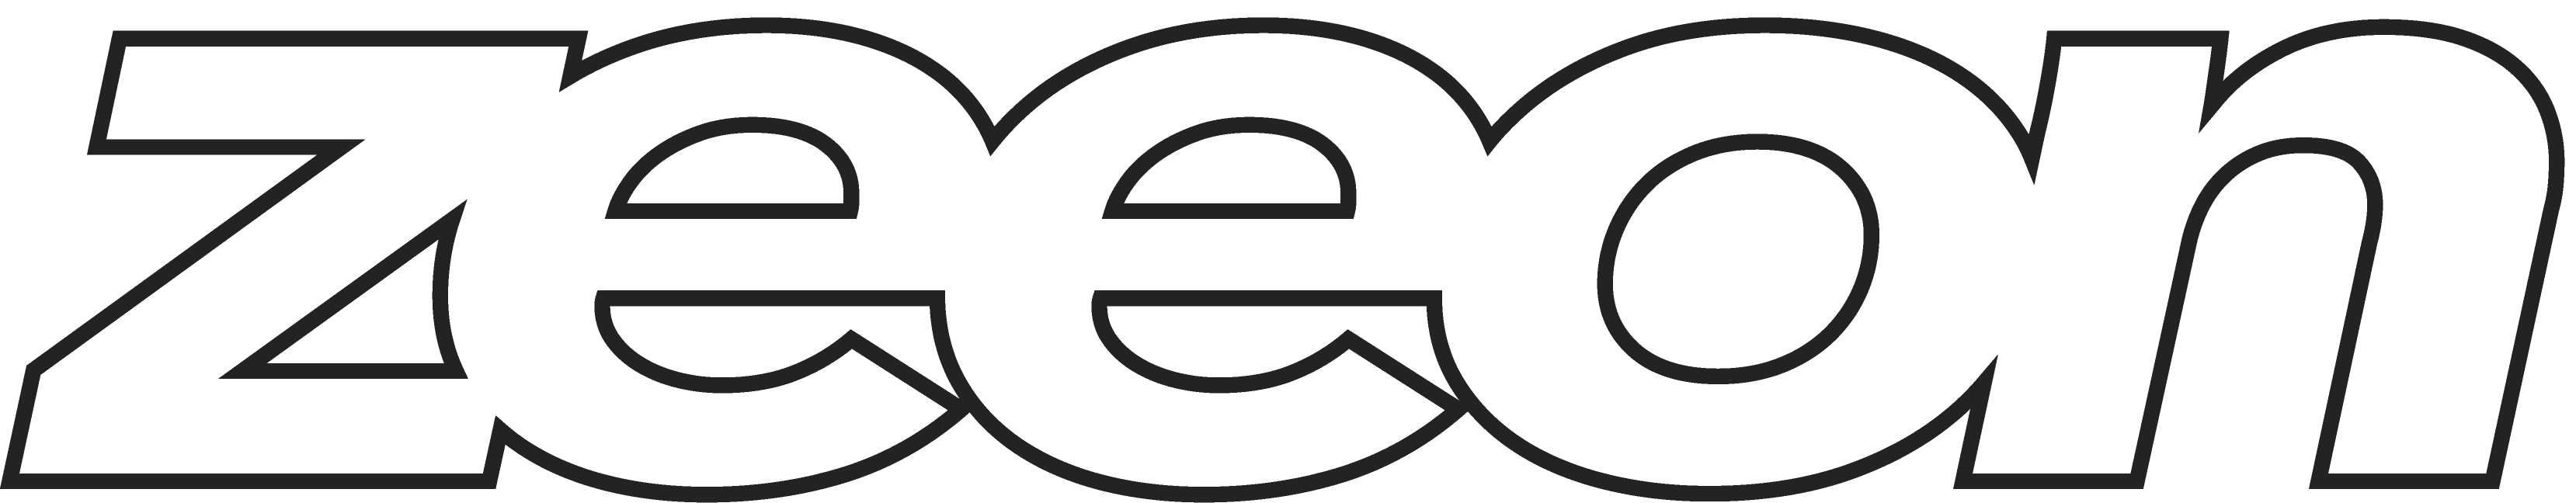 zeeon logo